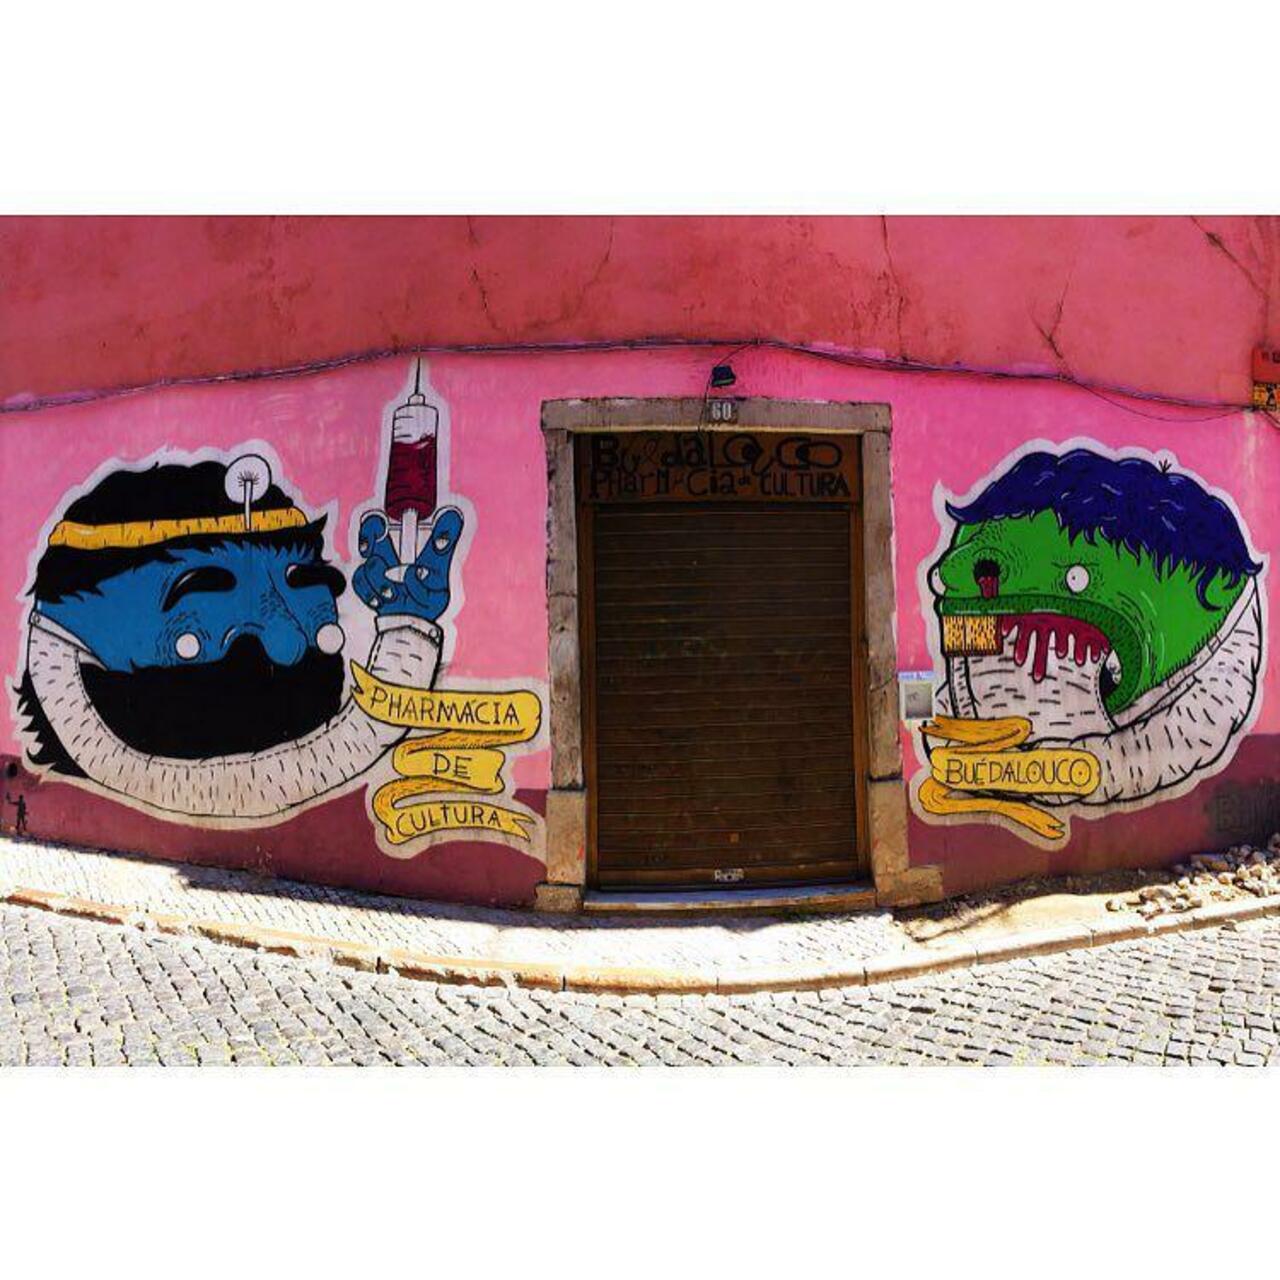 #lisboa #encarnação #bairroalto #buedalouco #pharmaciadicultura #streetart #graffiti #vscocam by bheu http://t.co/mgJFC2Sv2t